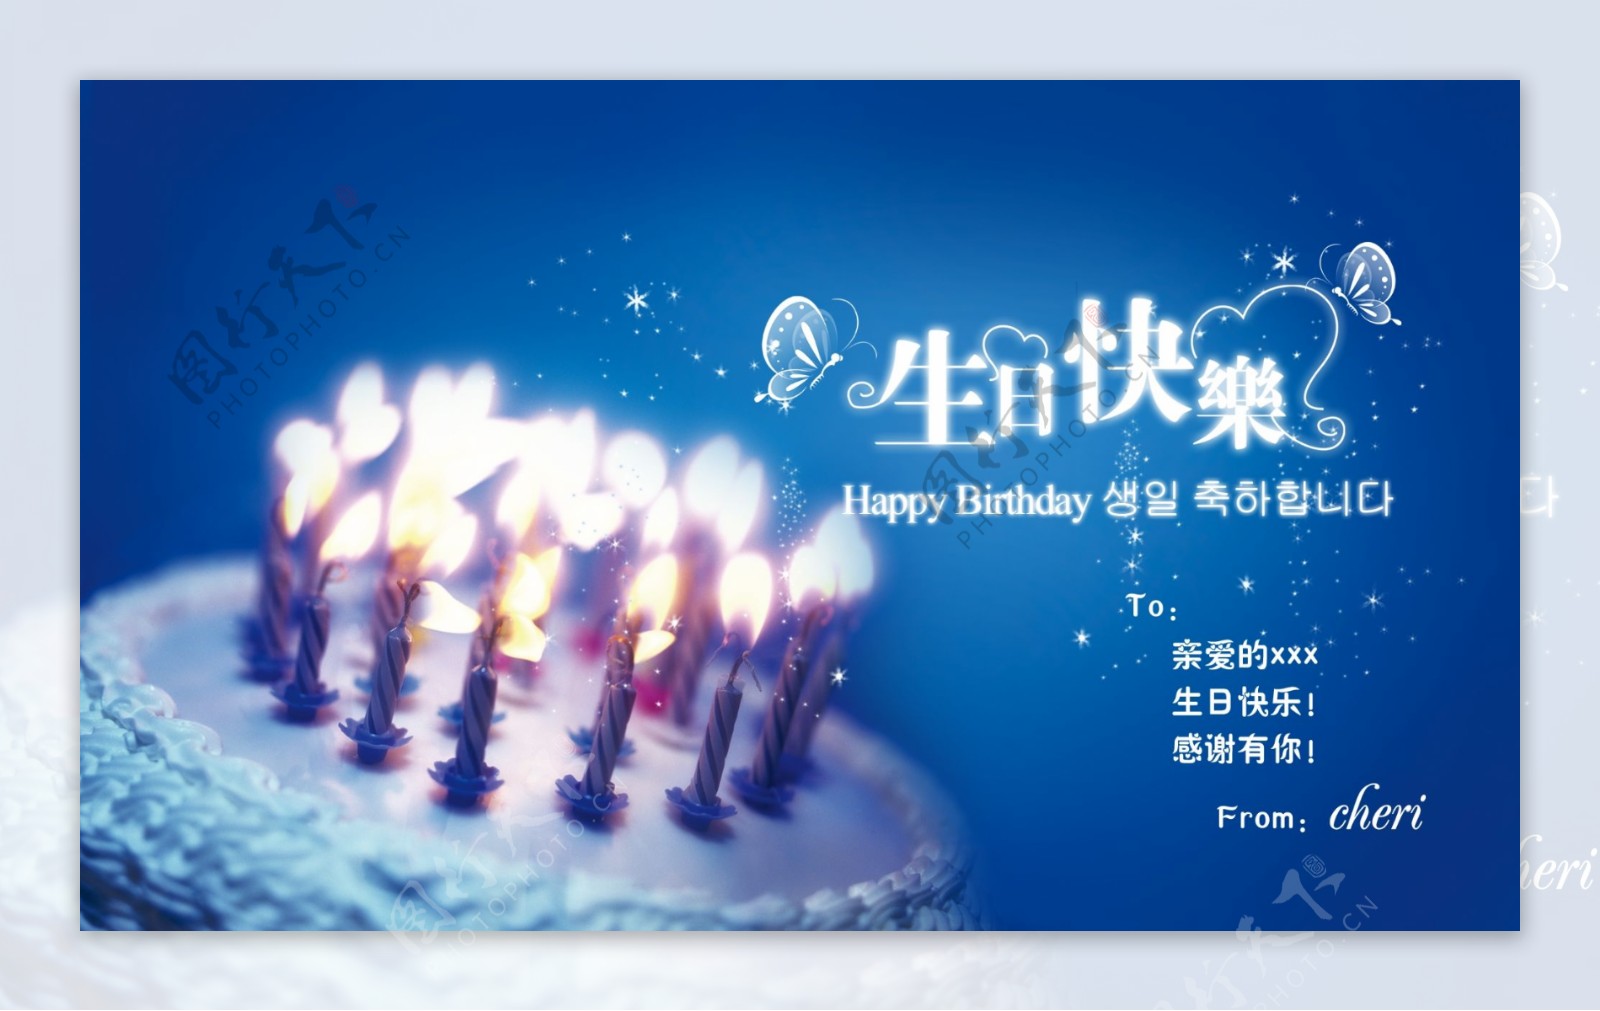 生日快乐蛋糕蜡烛祝福海报蓝色渐变背景